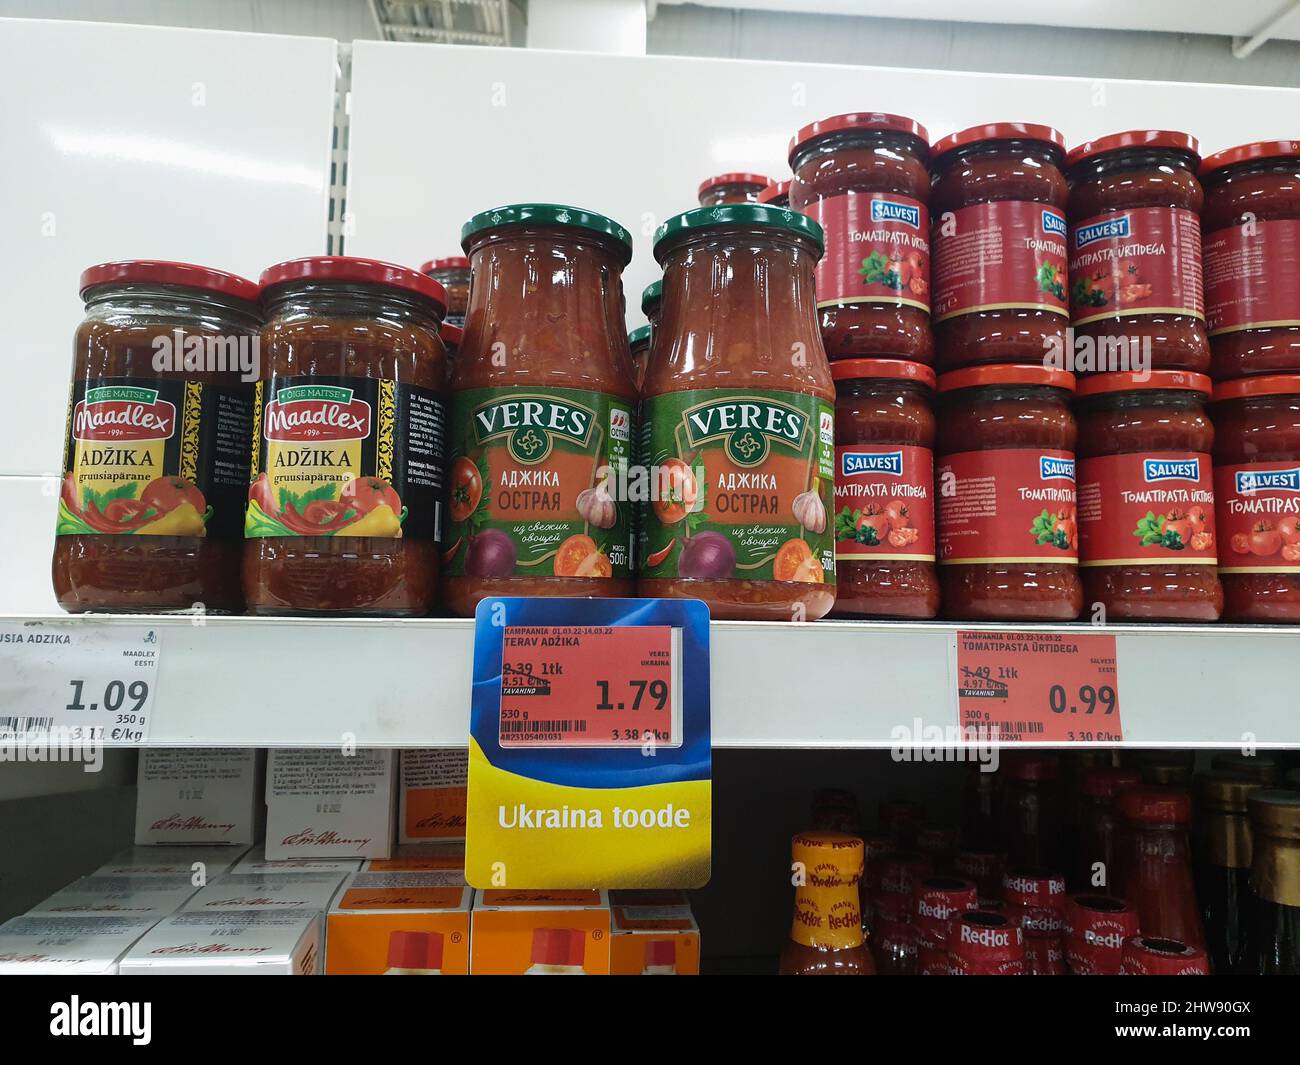 Ukrainische Produkte mit speziellen Tag im Supermarkt gekennzeichnet. Beschriftung auf dem Etikett in englischer Sprache 'Product of Ukraine'. Die Ukraine exportiert Produkte. Stockfoto